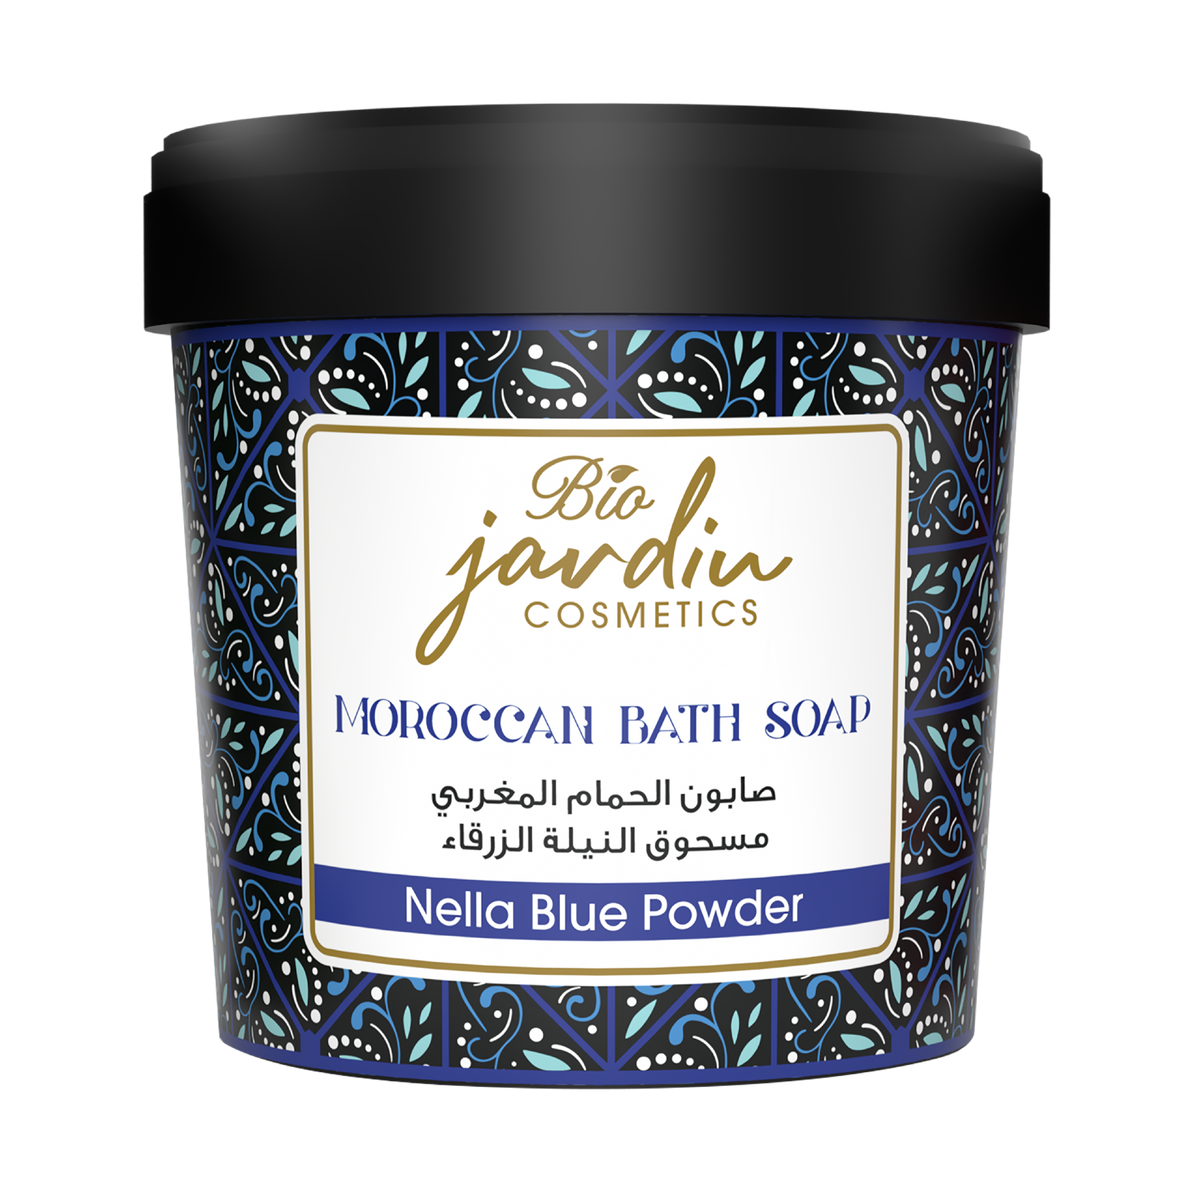 Rejuvenating Nella Blue Powder Moroccan Soap